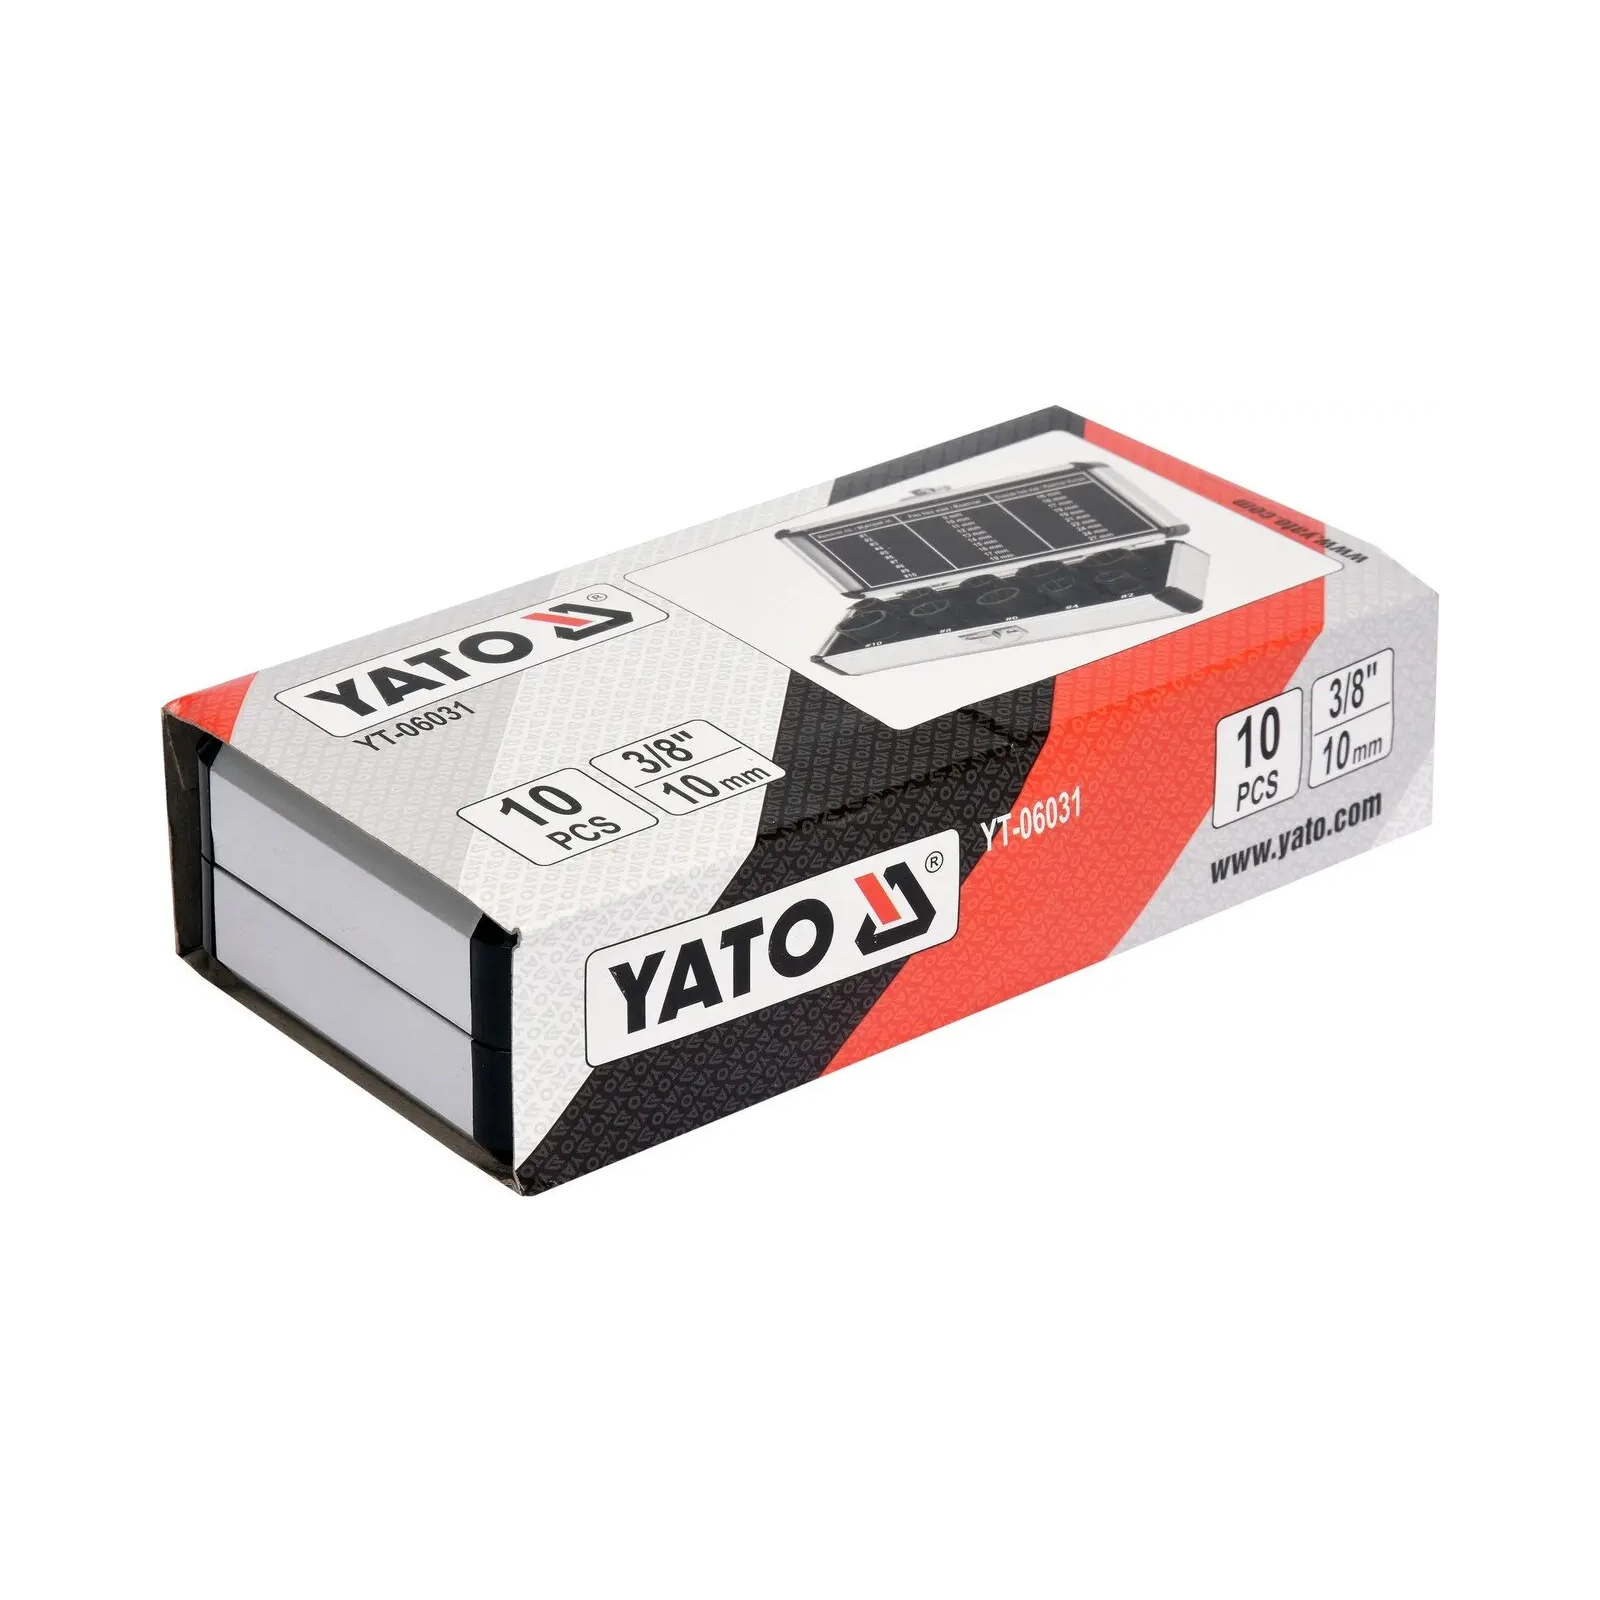 Екстрактор Yato YT-06031 набір для пошкодженіх болтів (YT-06031) зображення 4